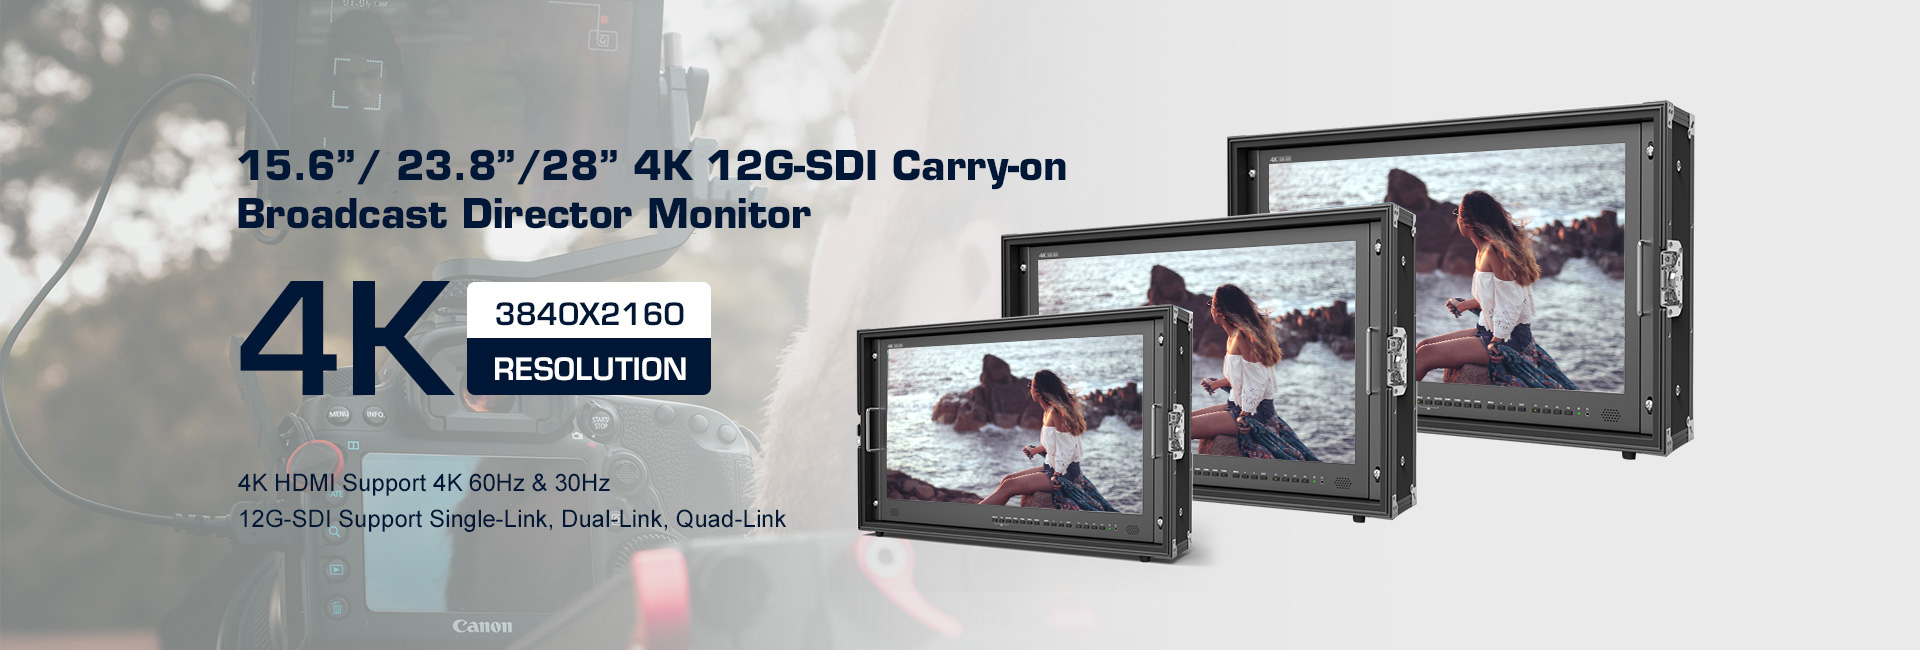 Monitor SDI 12G CK2380-12G